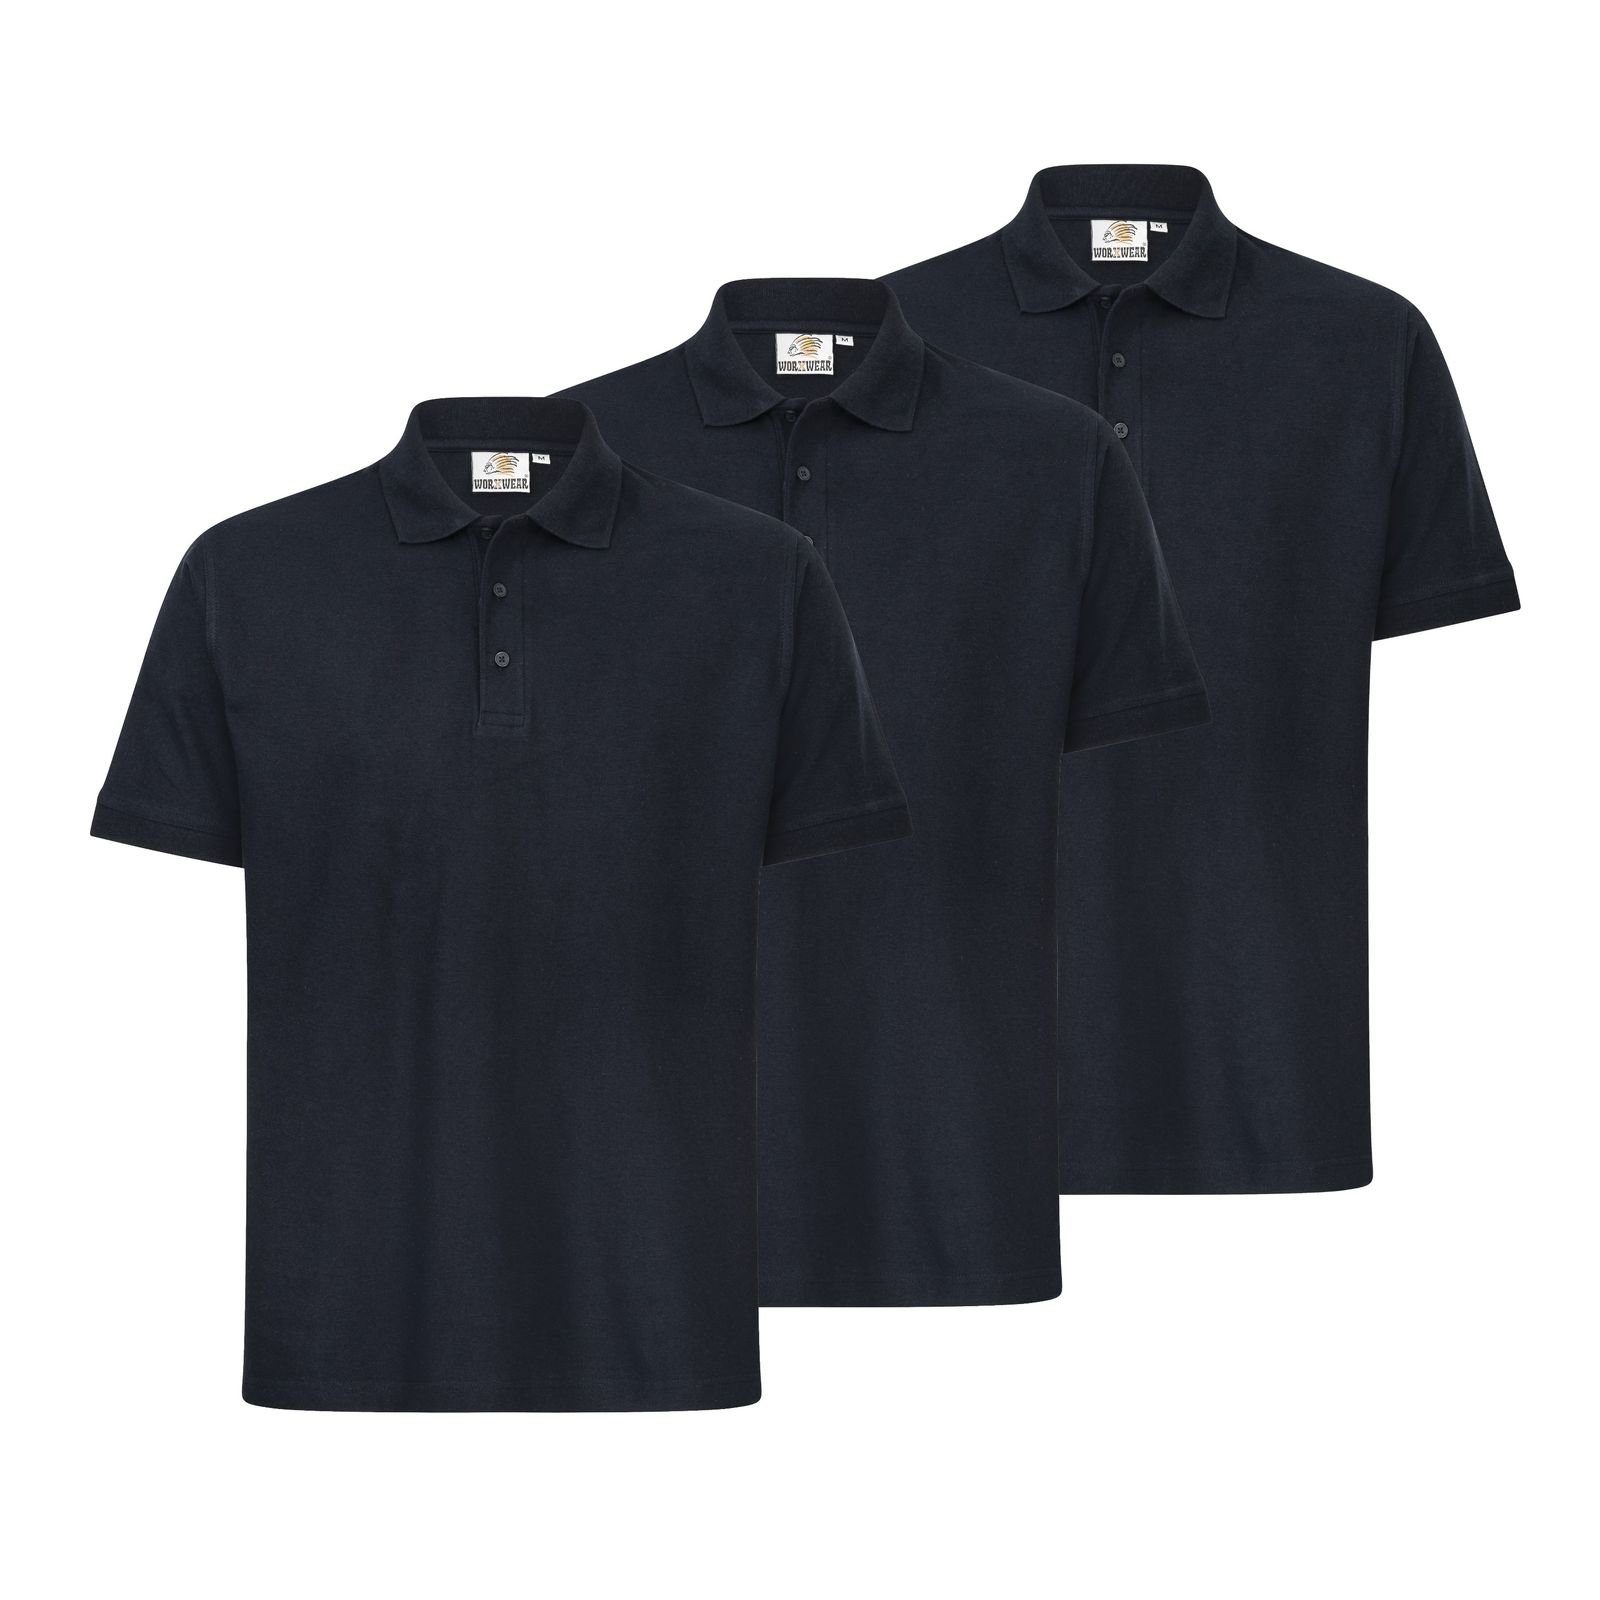 WORXWEAR Poloshirt Herren (Spar-Set, 3er-Pack) strapazierfähiges Poloshirt mit Einlaufwert < 5% dunkelblau